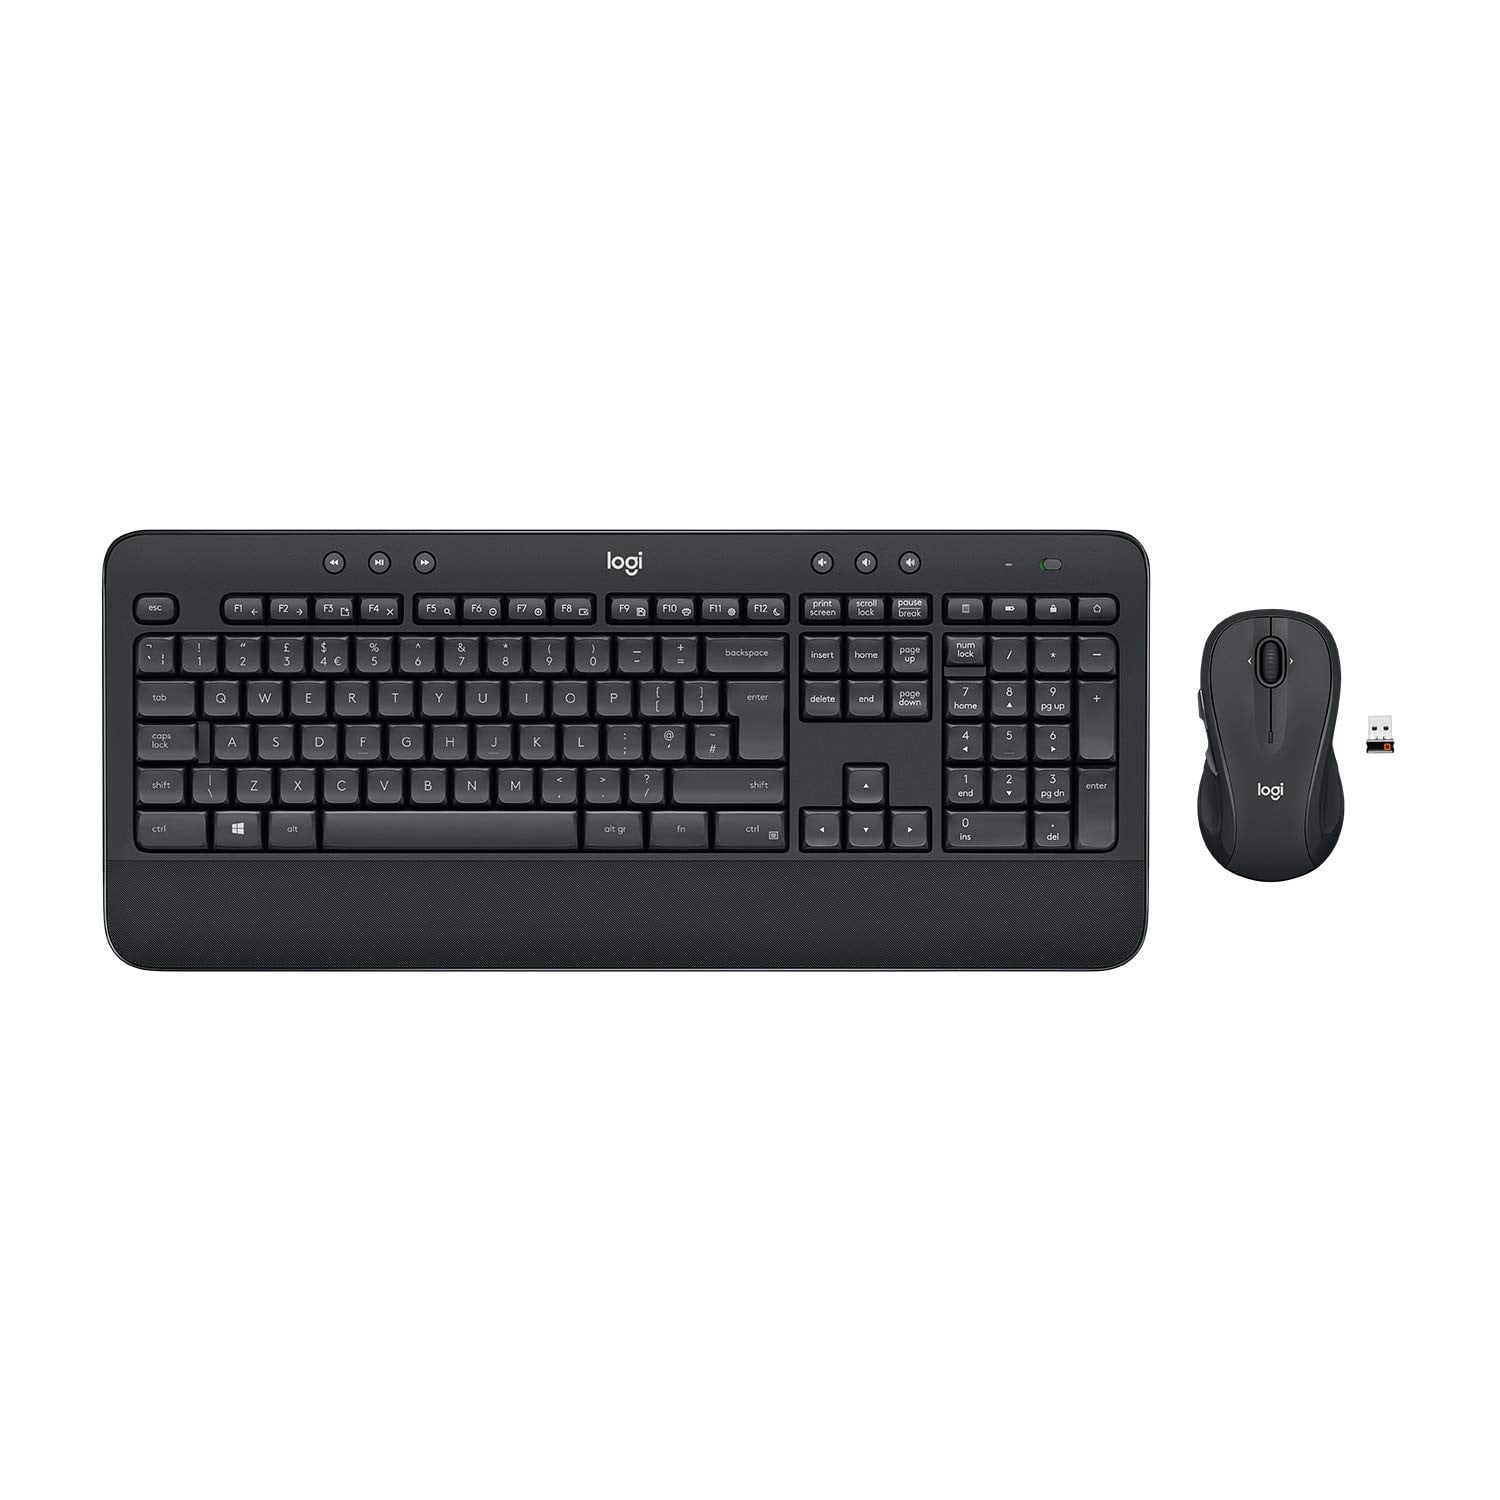 MK545 Advanced Keyboard and Mouse Black - Walmart.com